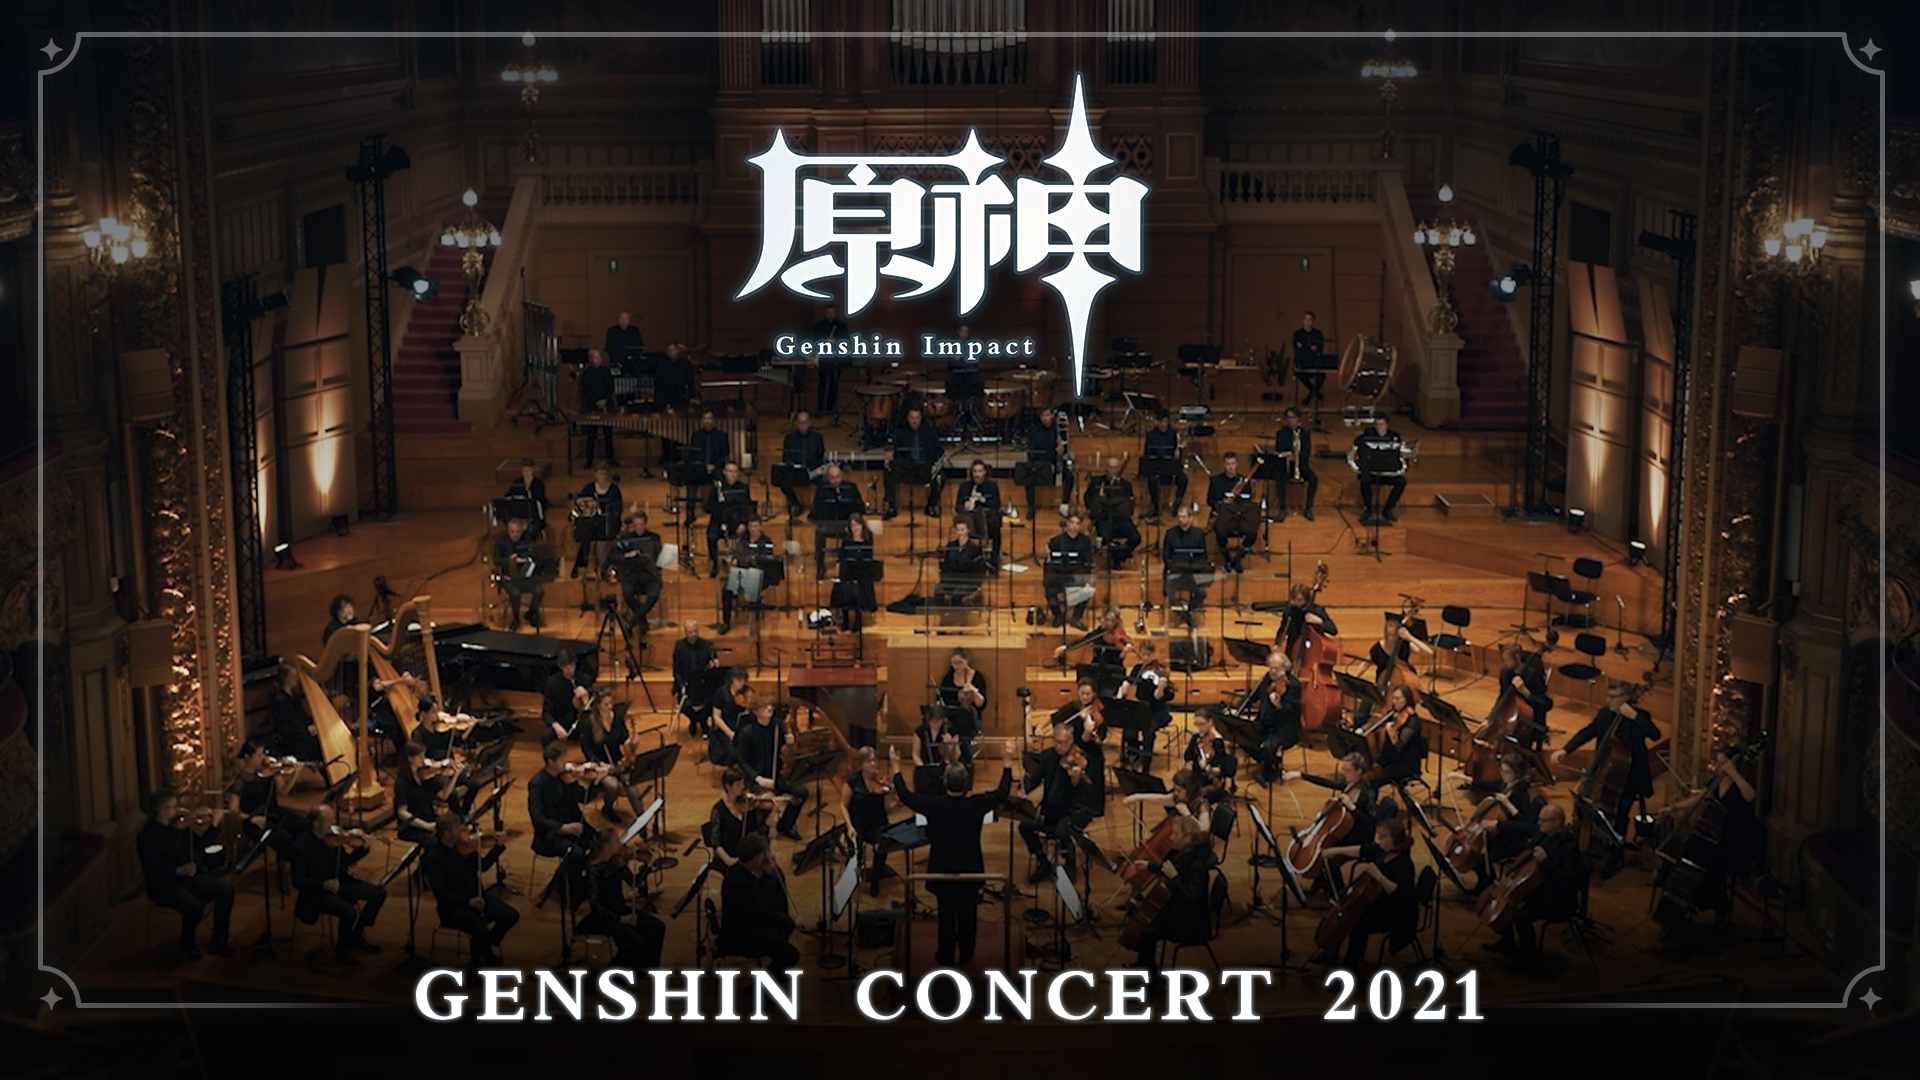 Les musiques de Yu-Peng Chen ont été interprétées par l'Orchestre symphonique de Flandre en 2021